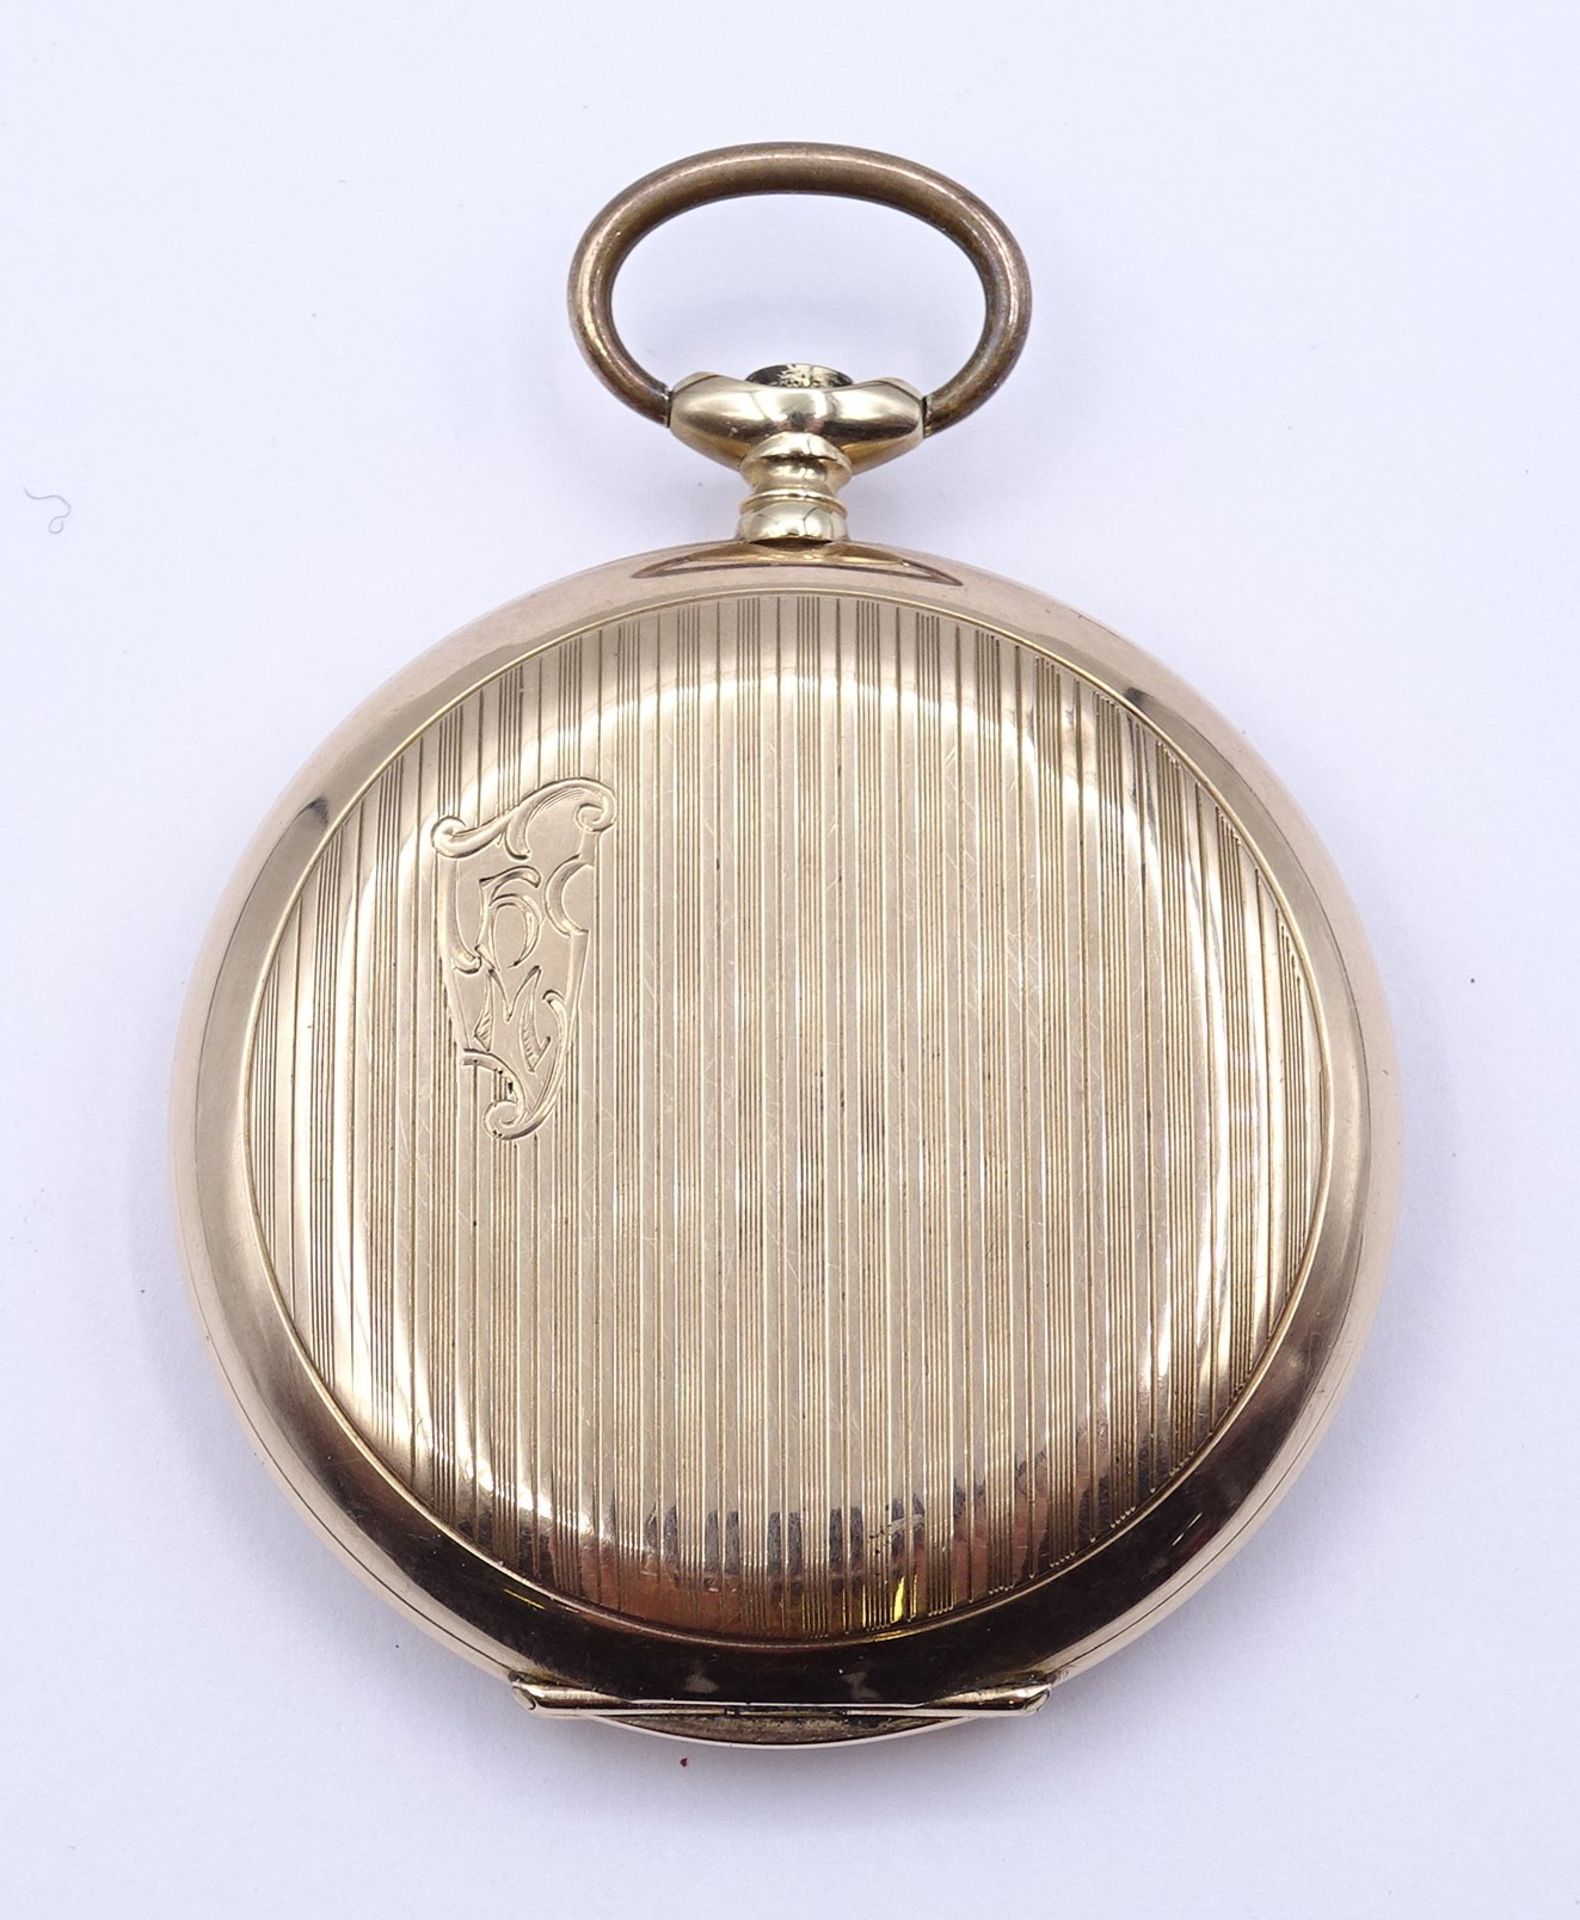 Herren Taschenuhr B.W.C. Chronometre, mechanisch, Krone fehlt, Funktion nicht überprüft, D. 49mm, B - Bild 5 aus 6